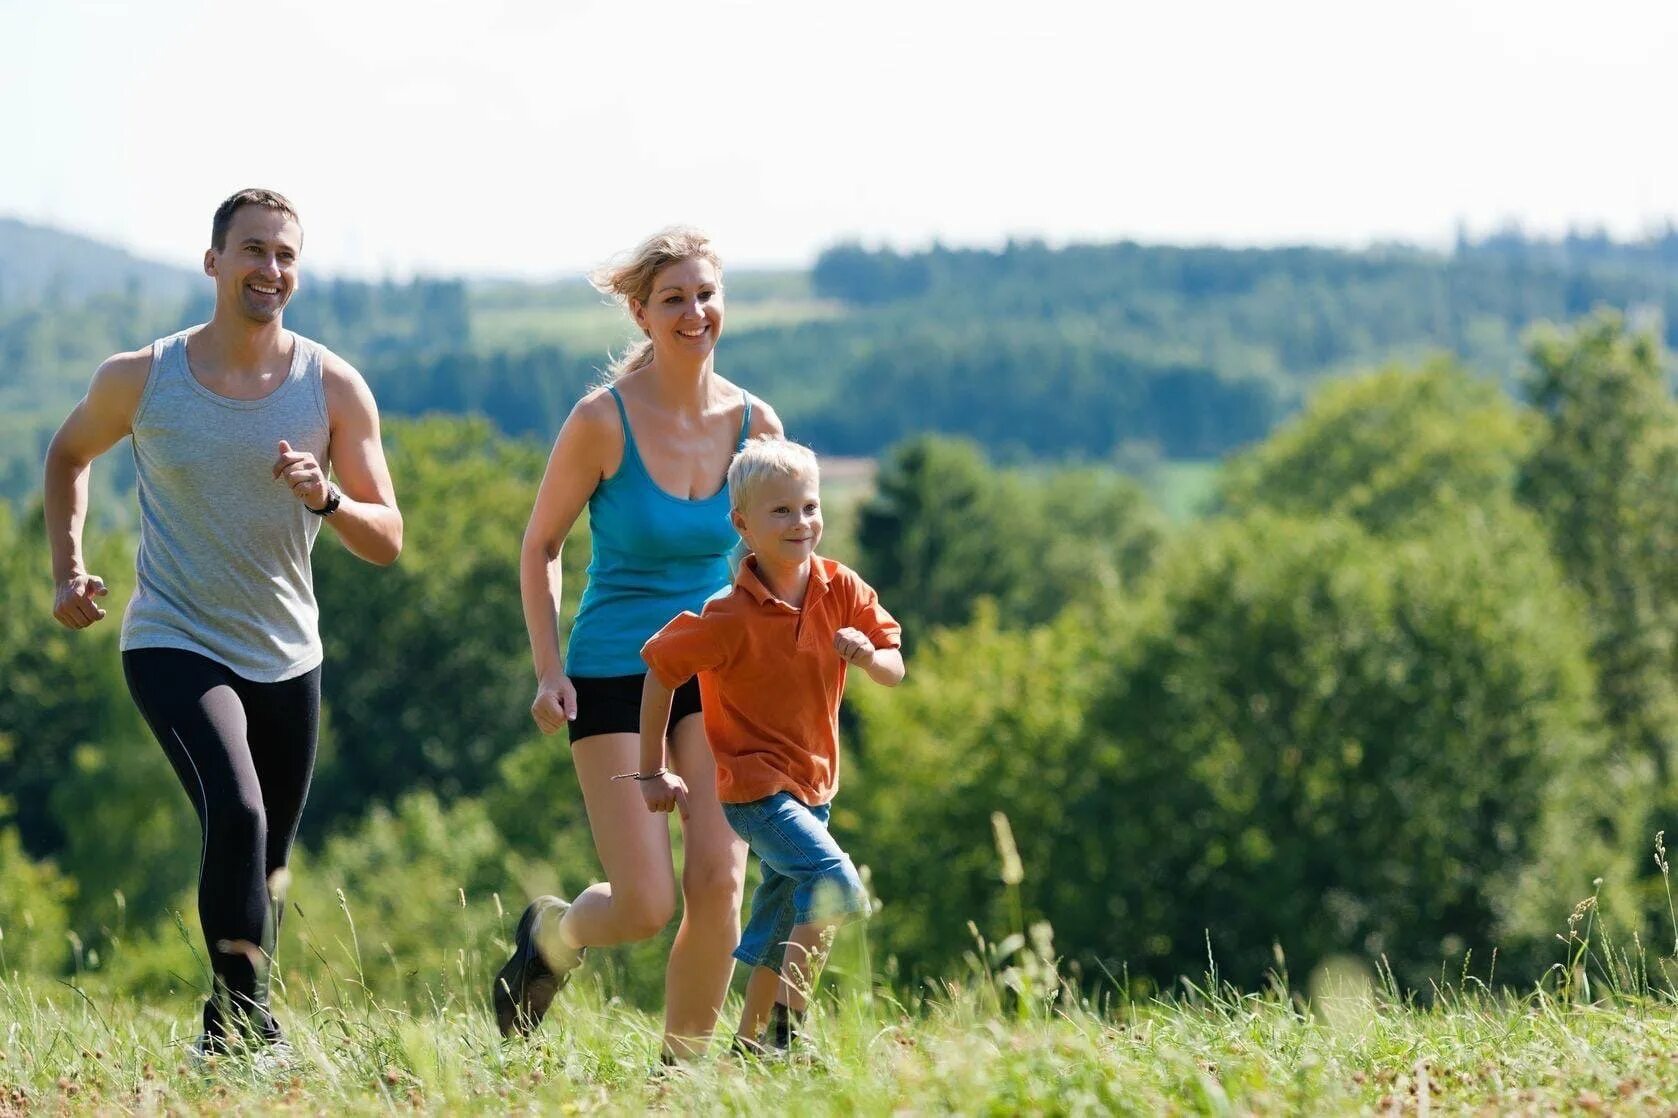 Занятия физической активностью. Семья занимается спортом. Активный образ жизни. Занятие спортом на природе. Спорт на свежем воздухе.